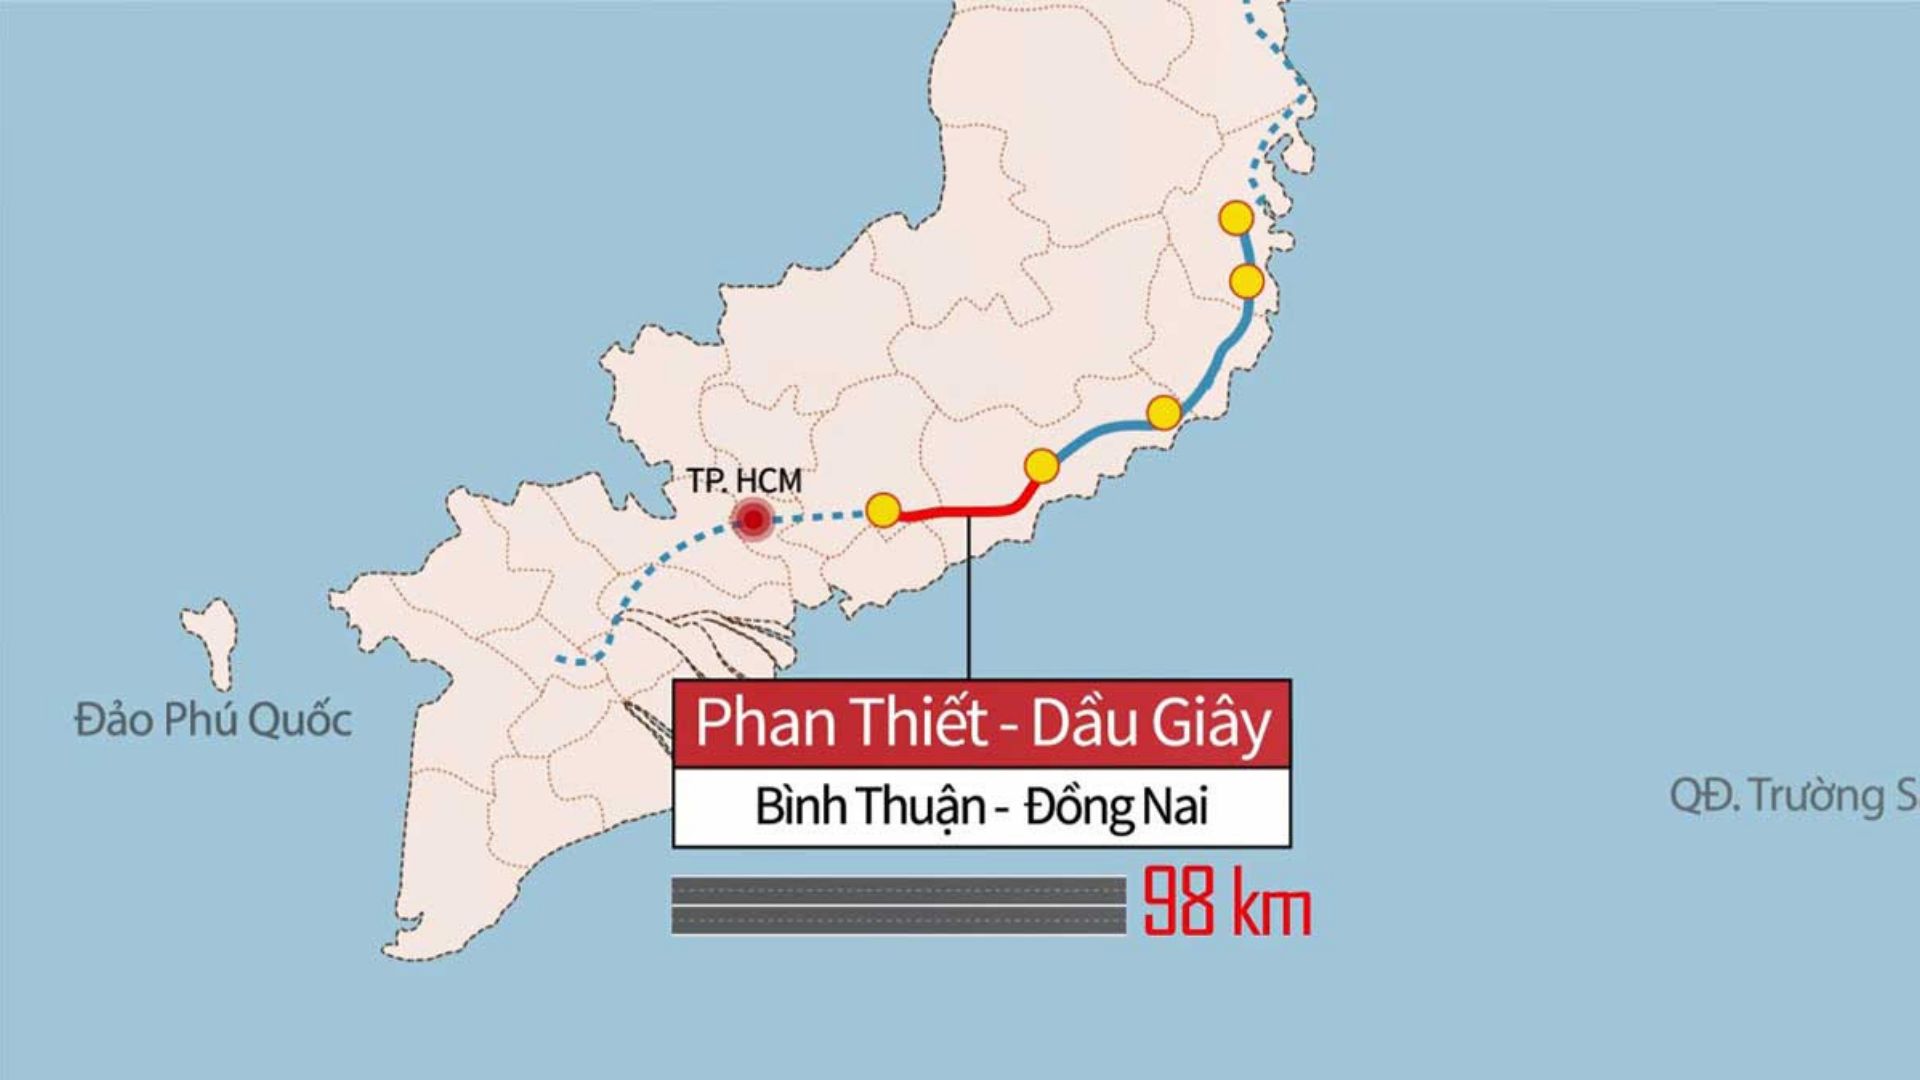 Cao tốc Phan Thiết - Dầu Giây trên bản đồ 